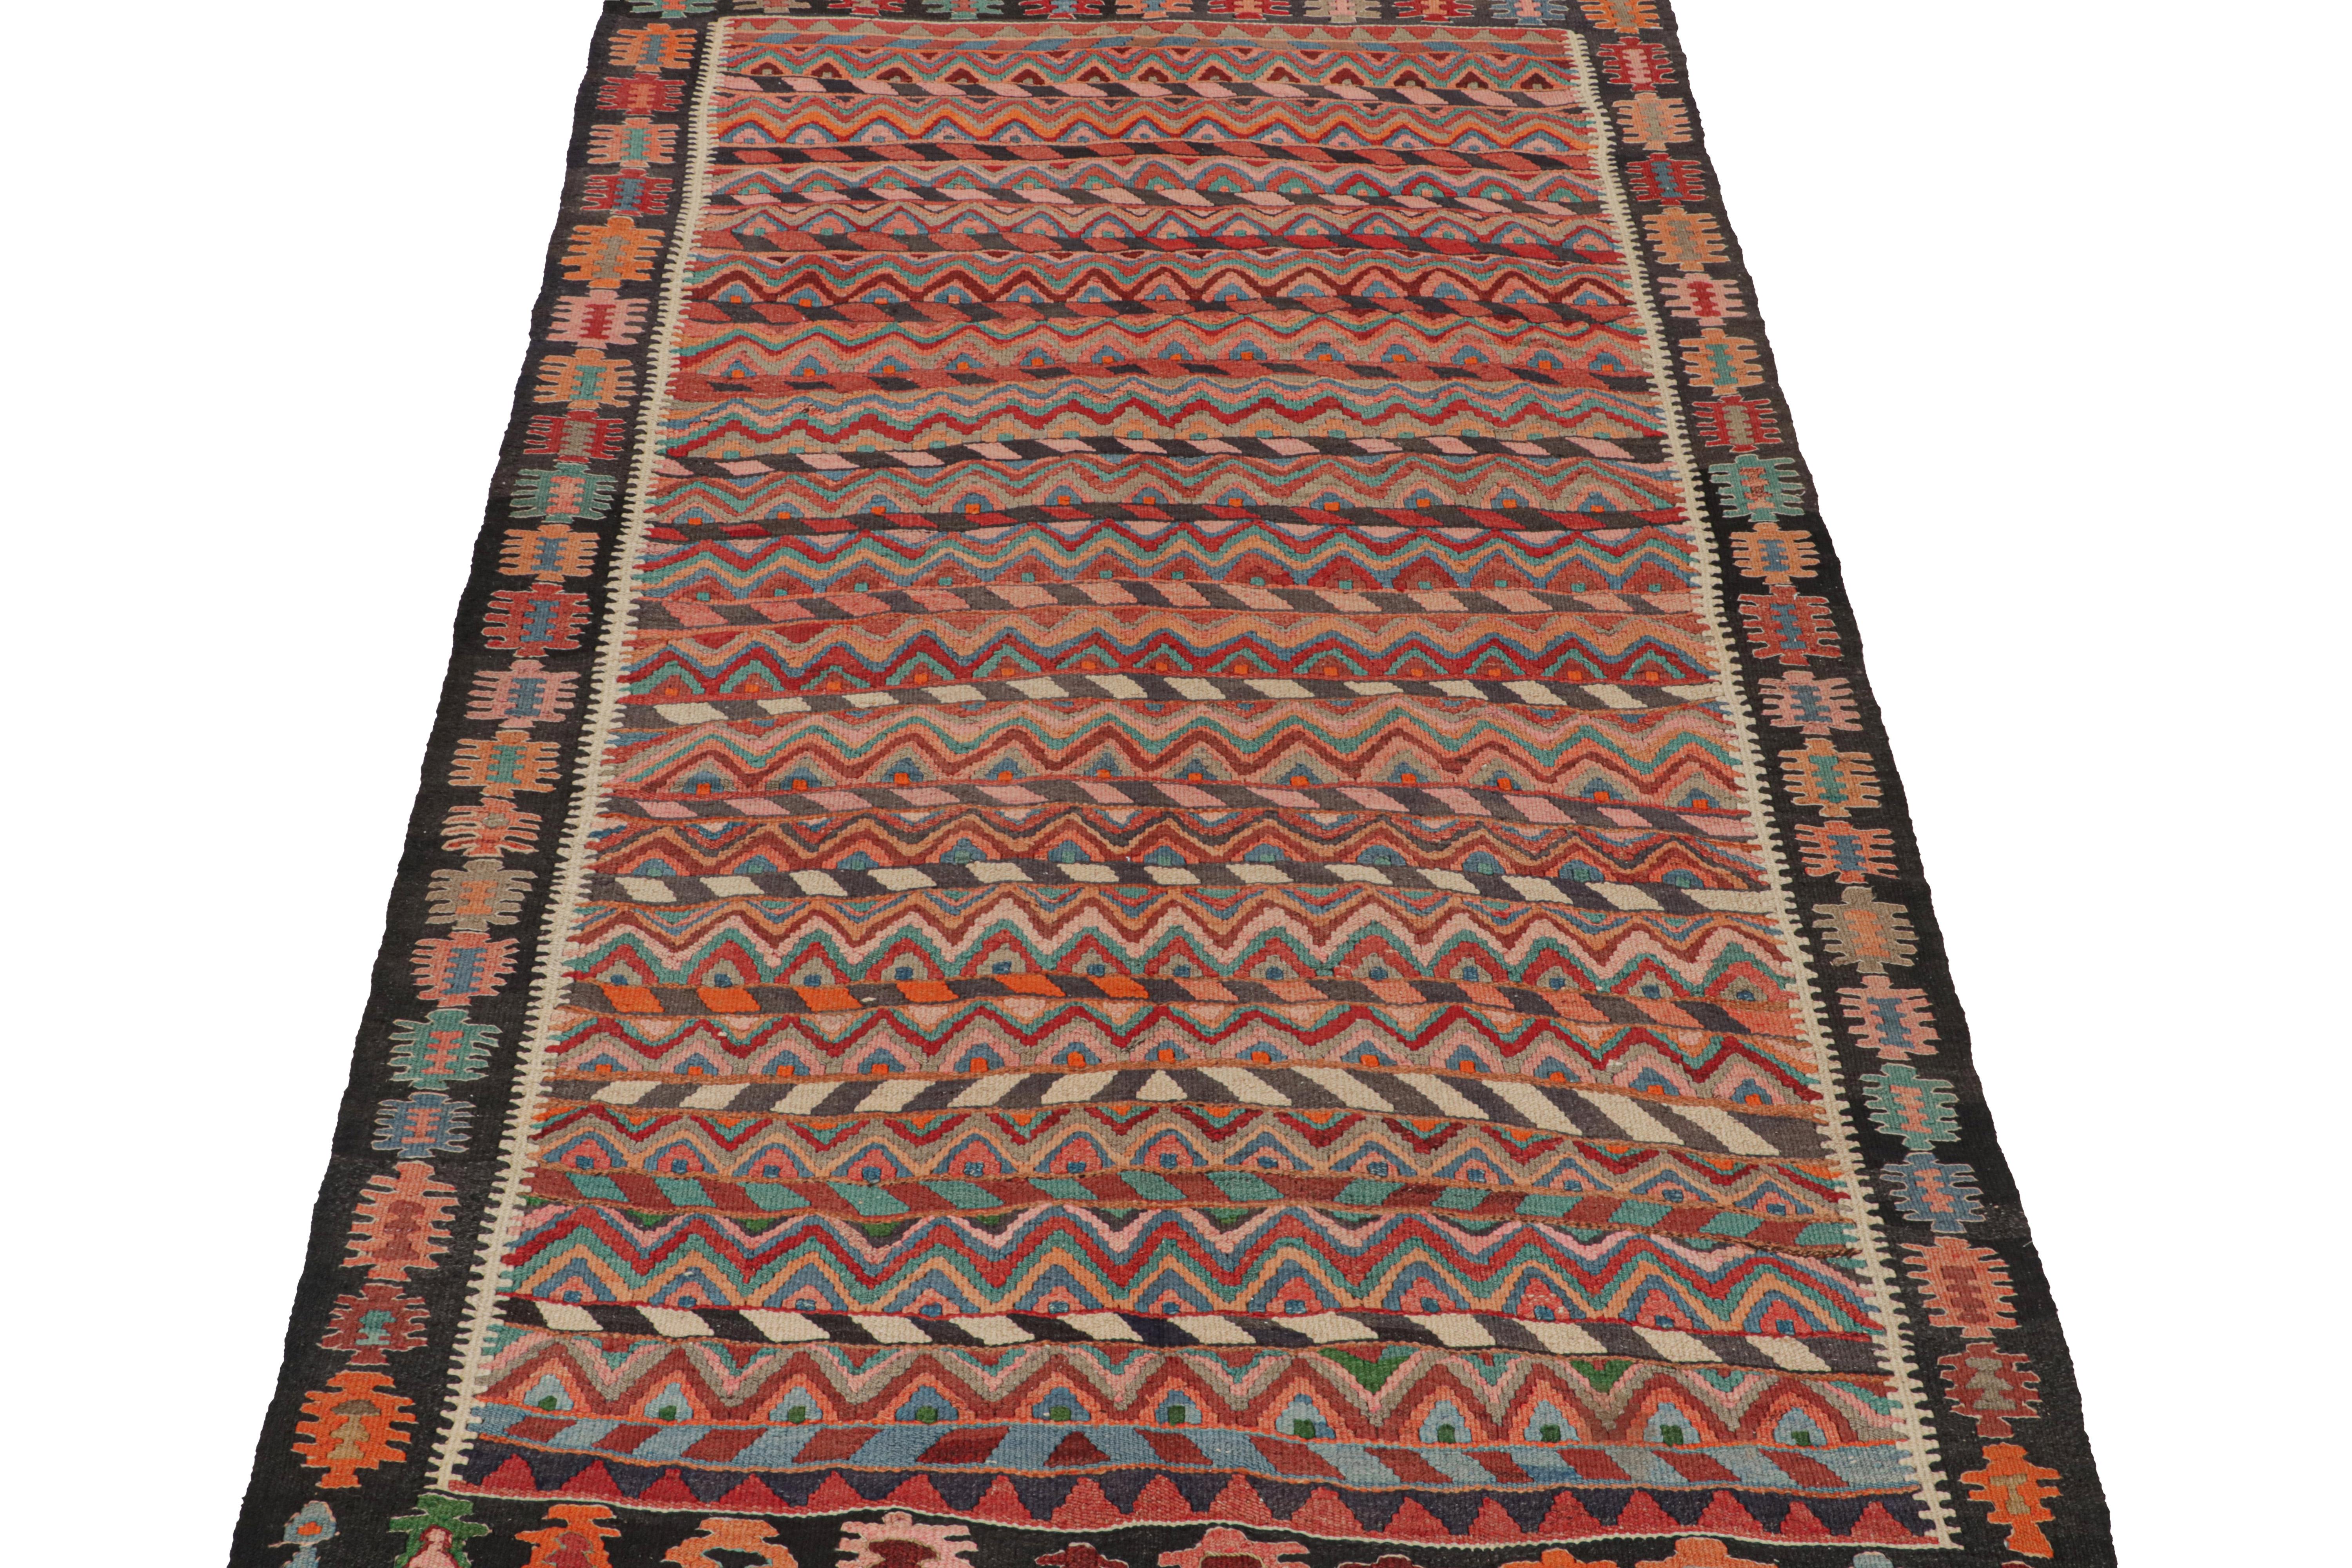 Ce Rug & Kilim persan de 7x11 est probablement un tapis Bidjar tissé à la main en laine vers 1950-1960.

Son champ est orné de rayures et de chevrons, tandis que sa bordure est ornée de motifs aux couleurs tout aussi vives. Les yeux attentifs